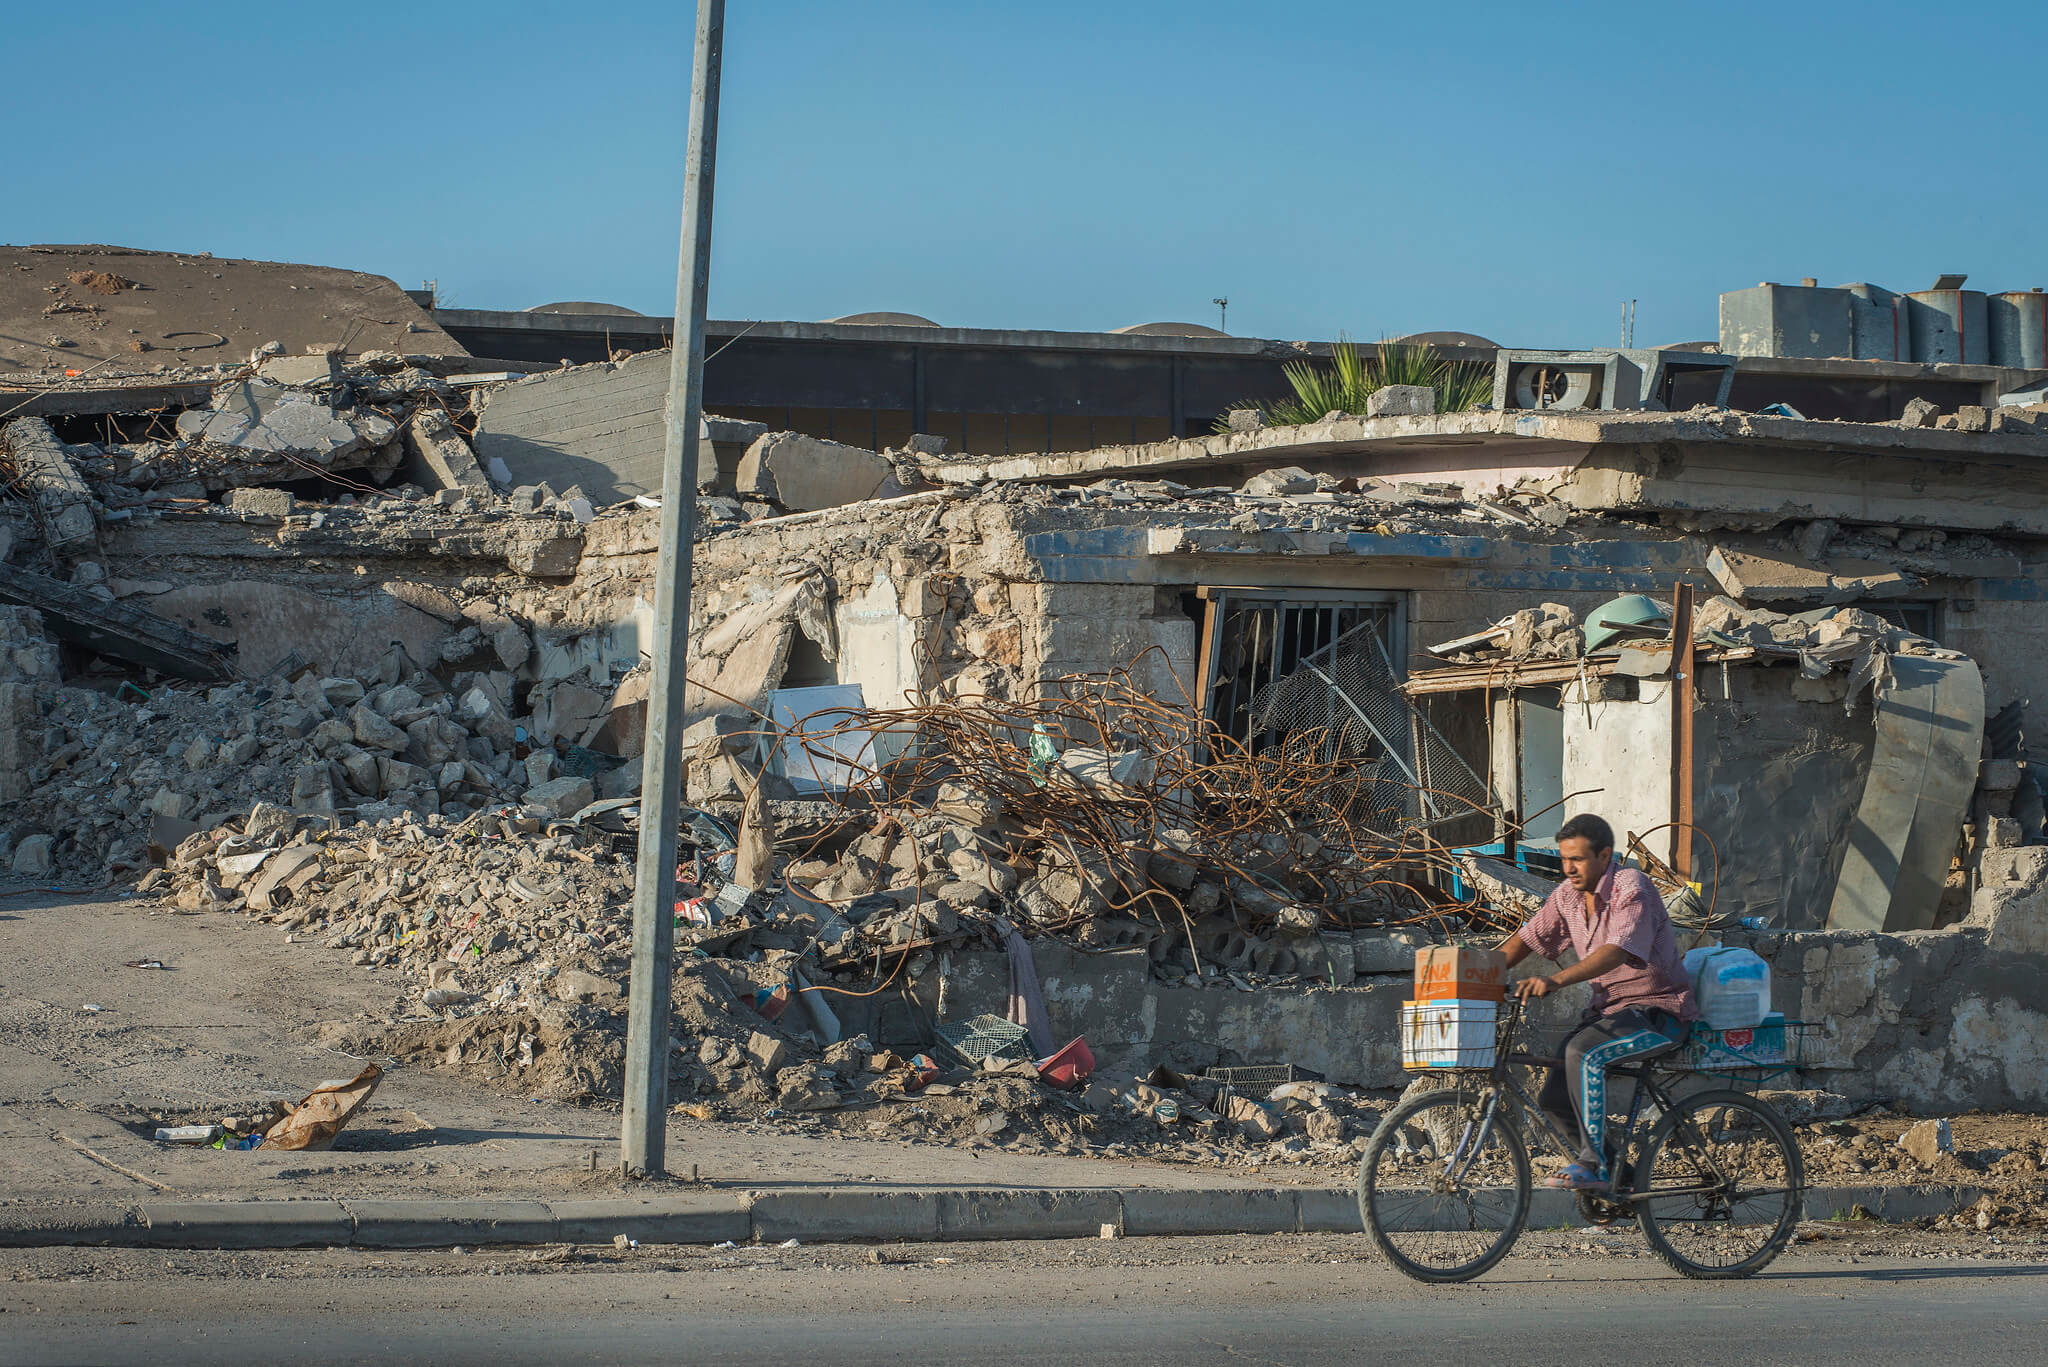 VanHelvert- Verwoeste huizen in de Iraakse stad Mosul in 2017. European Union-Peter Biro-Flickr